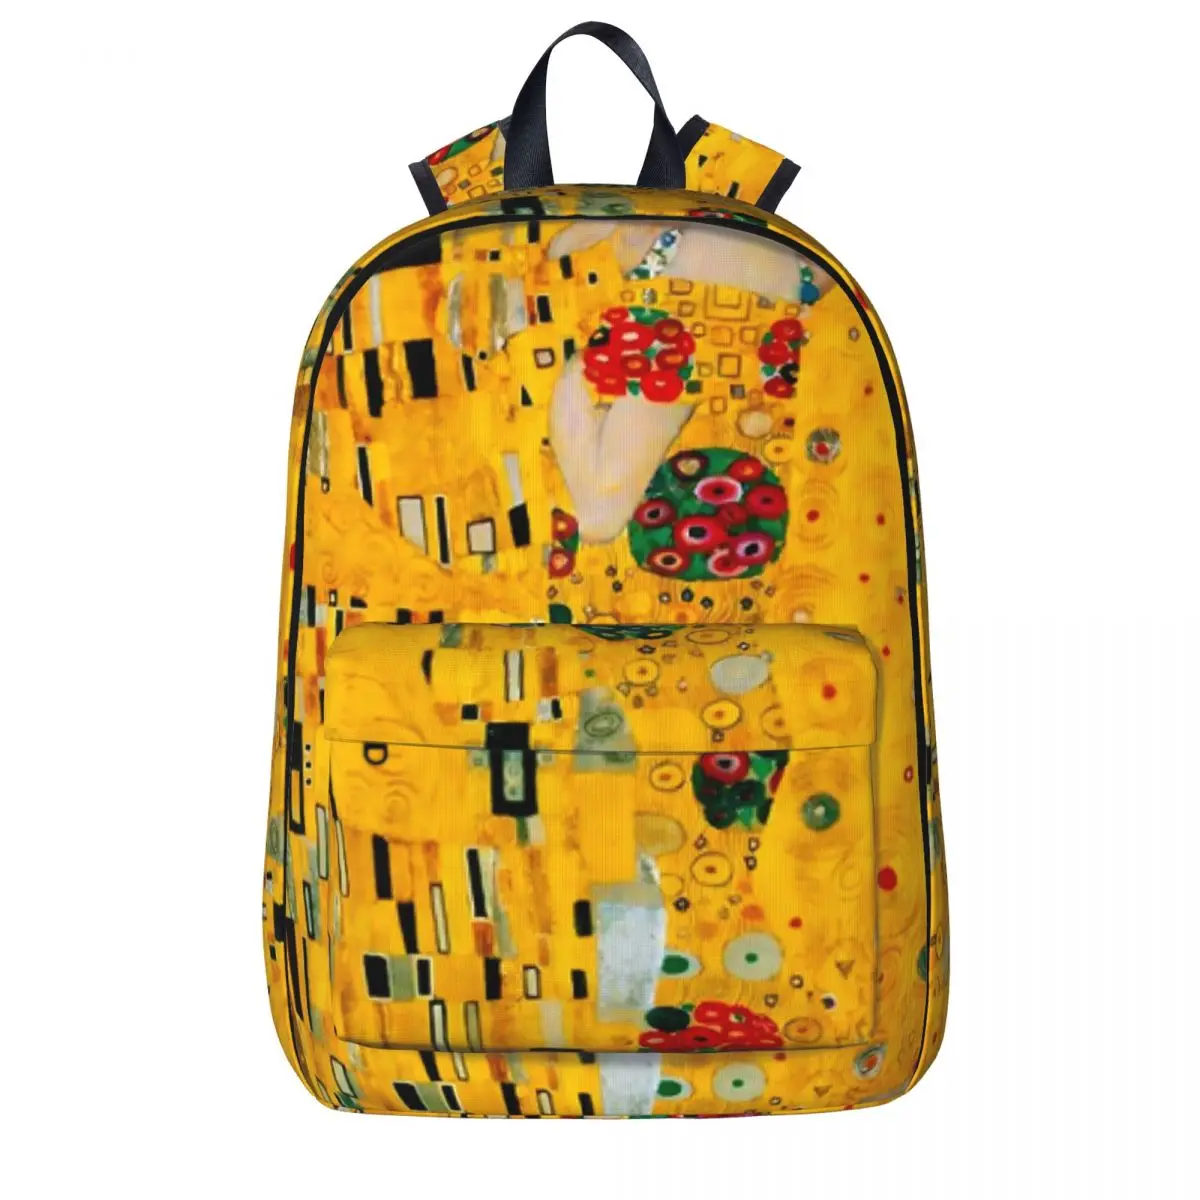 

Рюкзак Gustav Klimt для студентов, унисекс, мягкие рюкзаки с рисунком, стильные школьные ранцы, уличный дизайнерский рюкзак